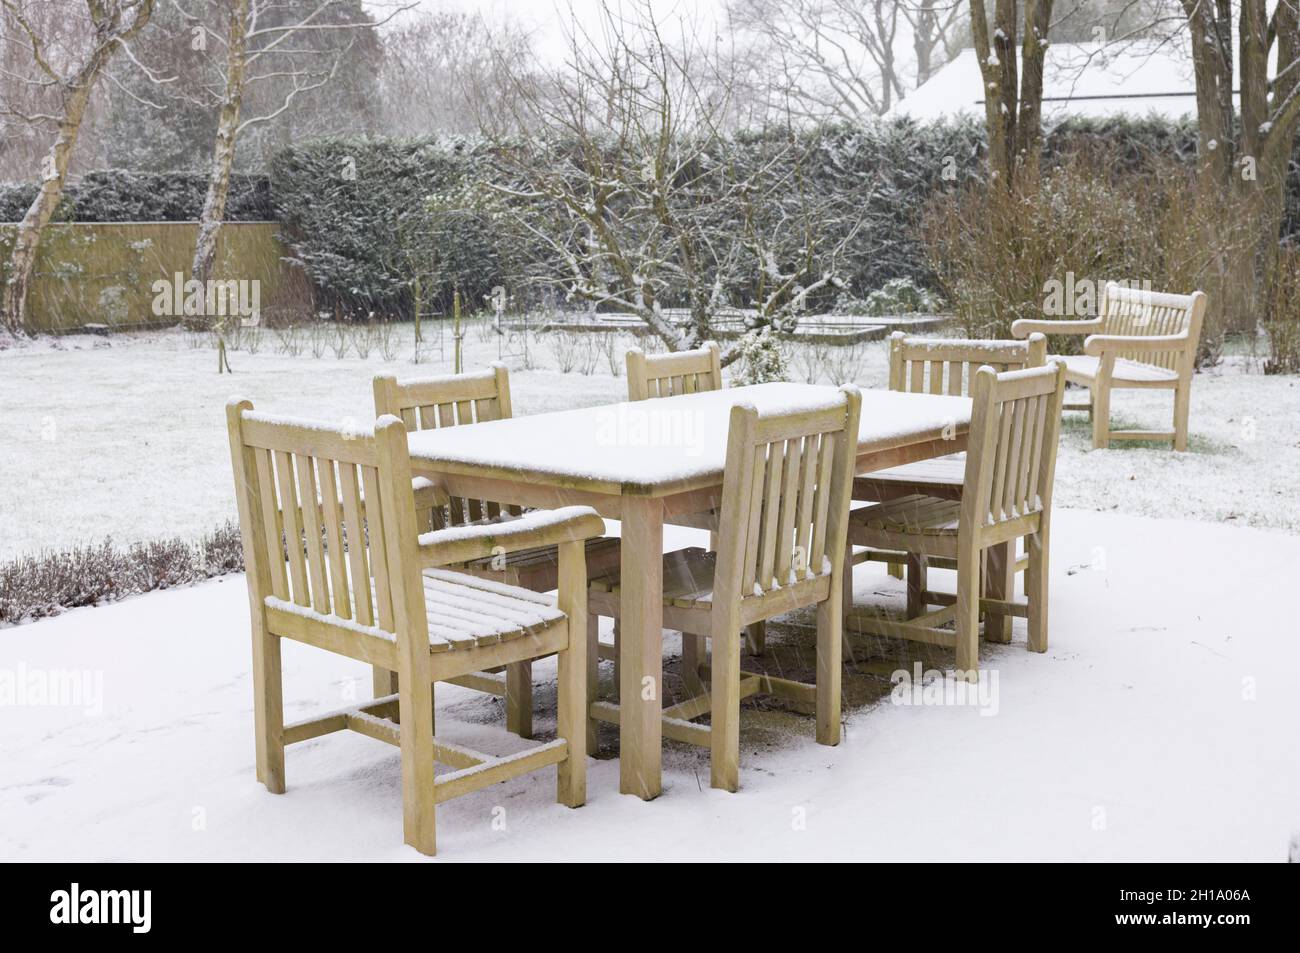 Patio jardín con mesas y sillas, mesa de madera y sillas cubiertas de nieve en invierno, Reino Unido Foto de stock